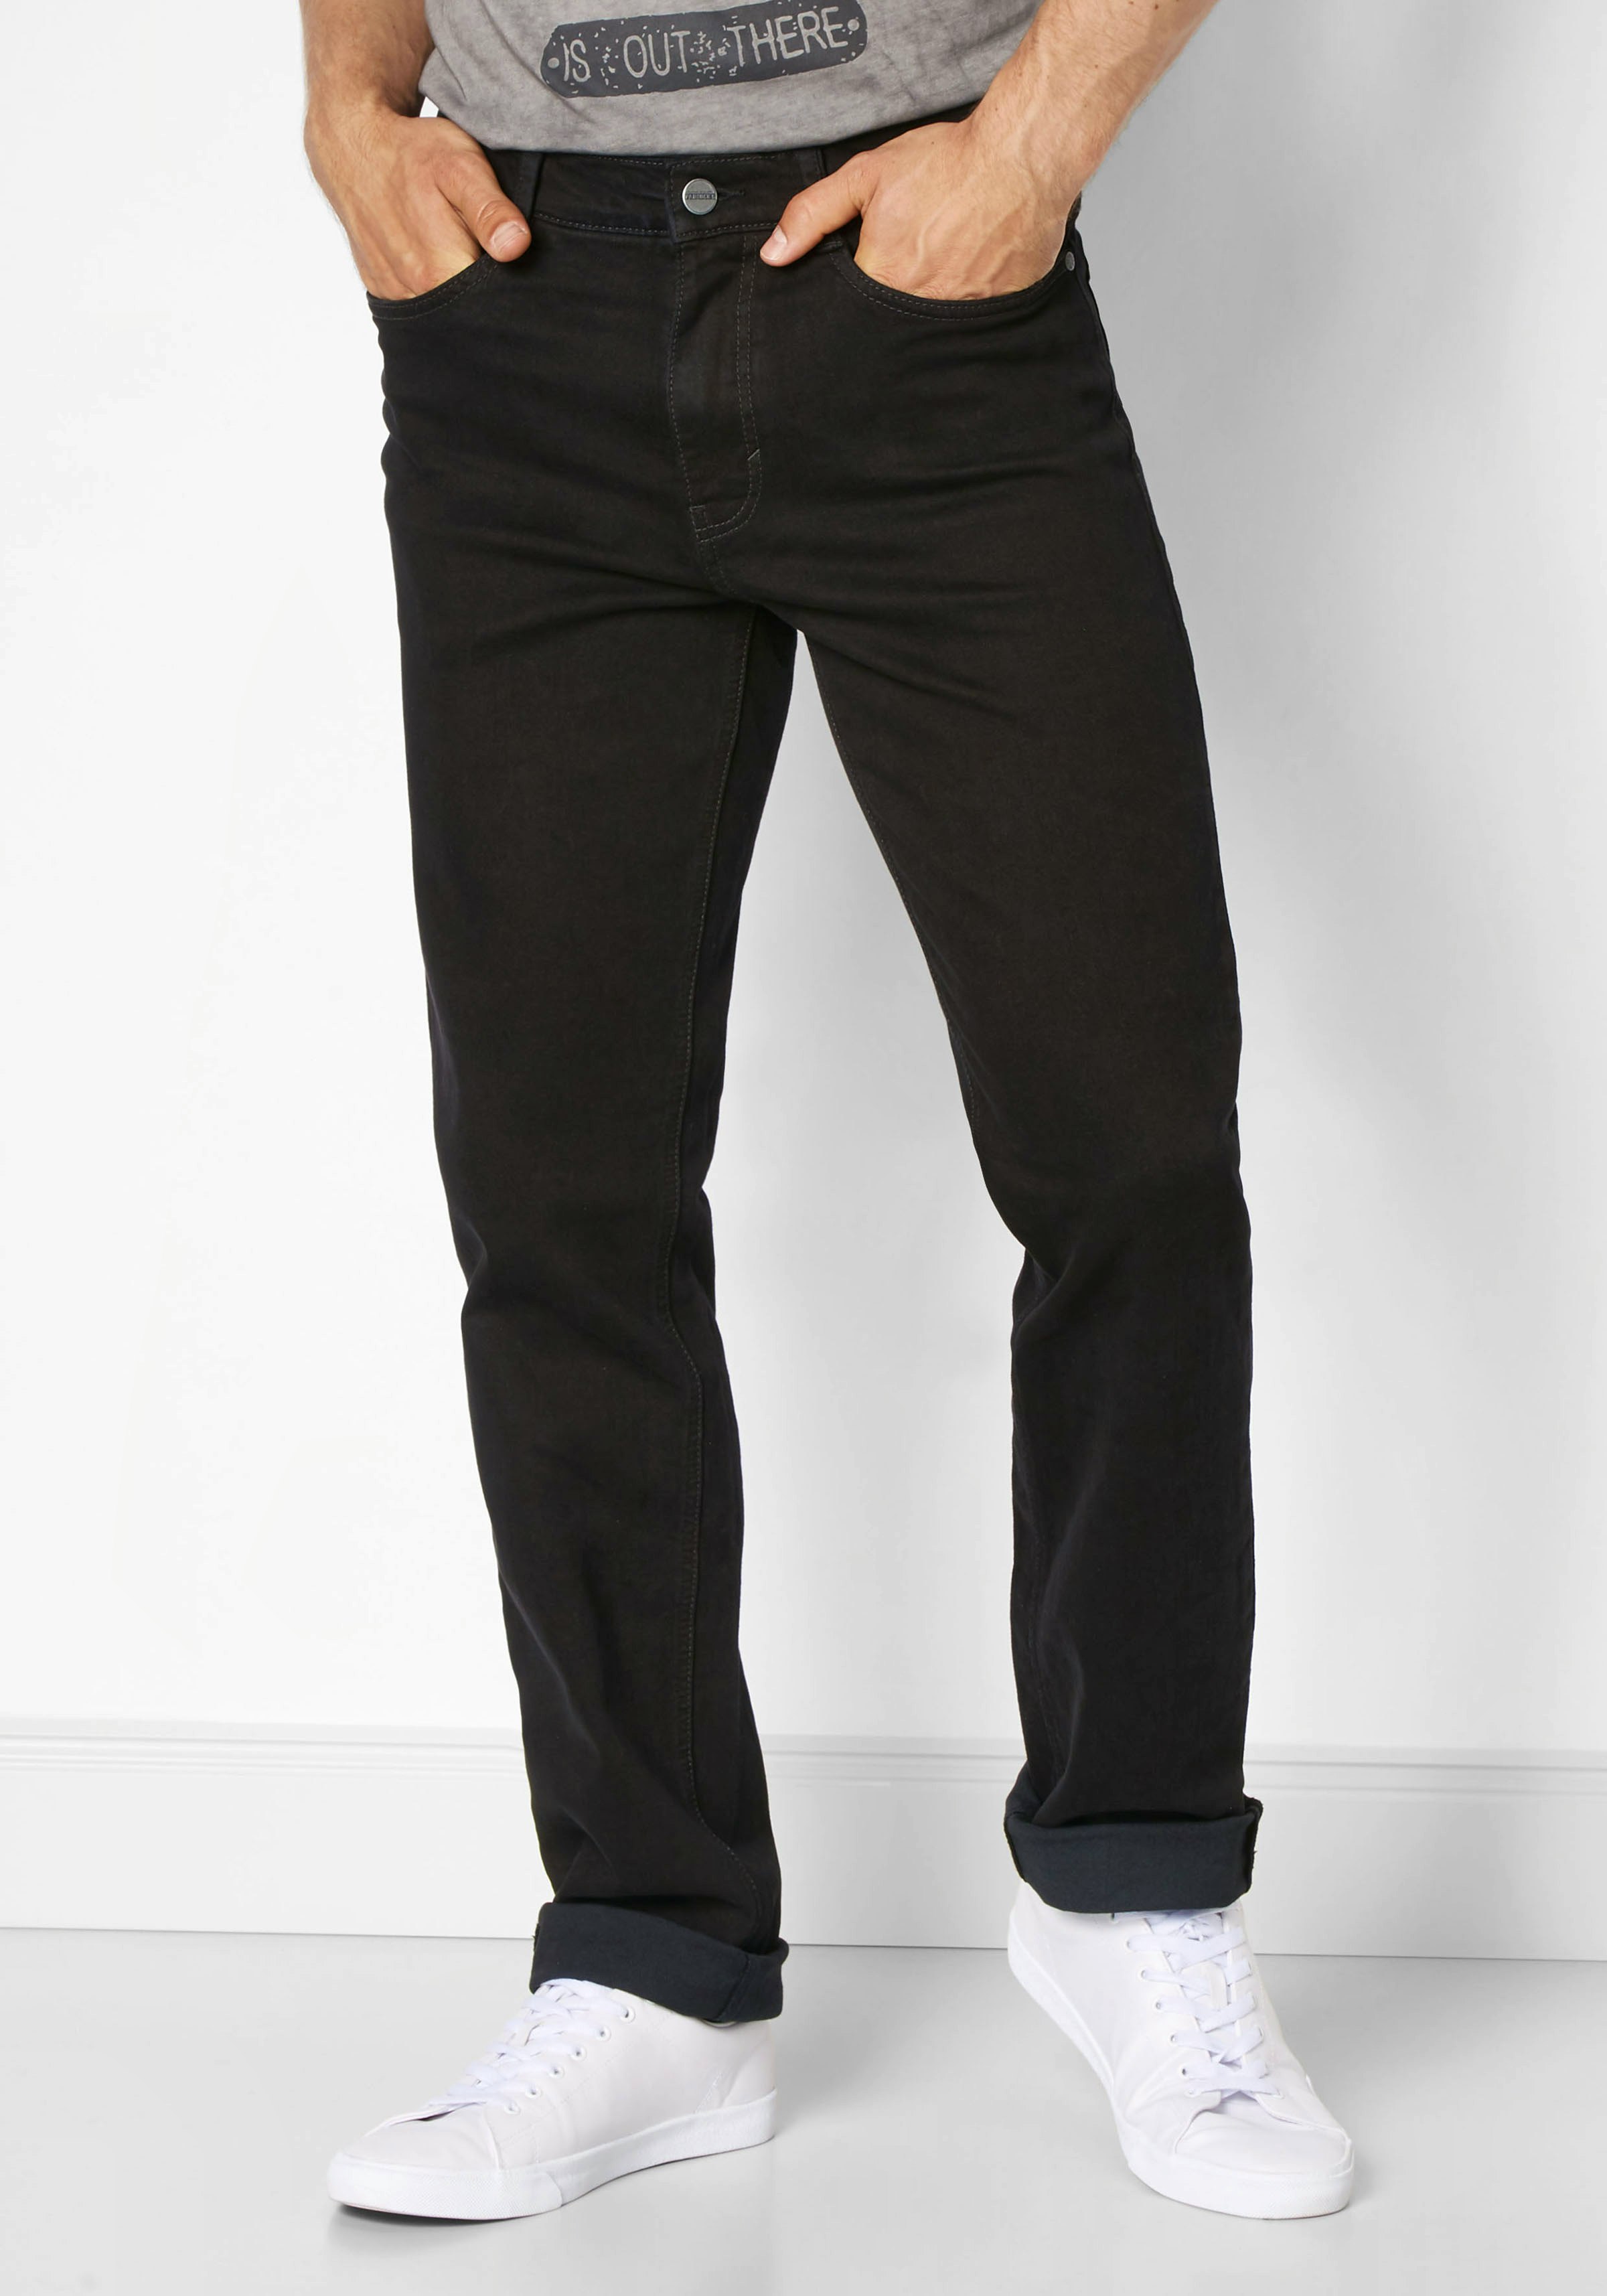 Herren jeans comfort fit - Die TOP Produkte unter der Menge an analysierten Herren jeans comfort fit